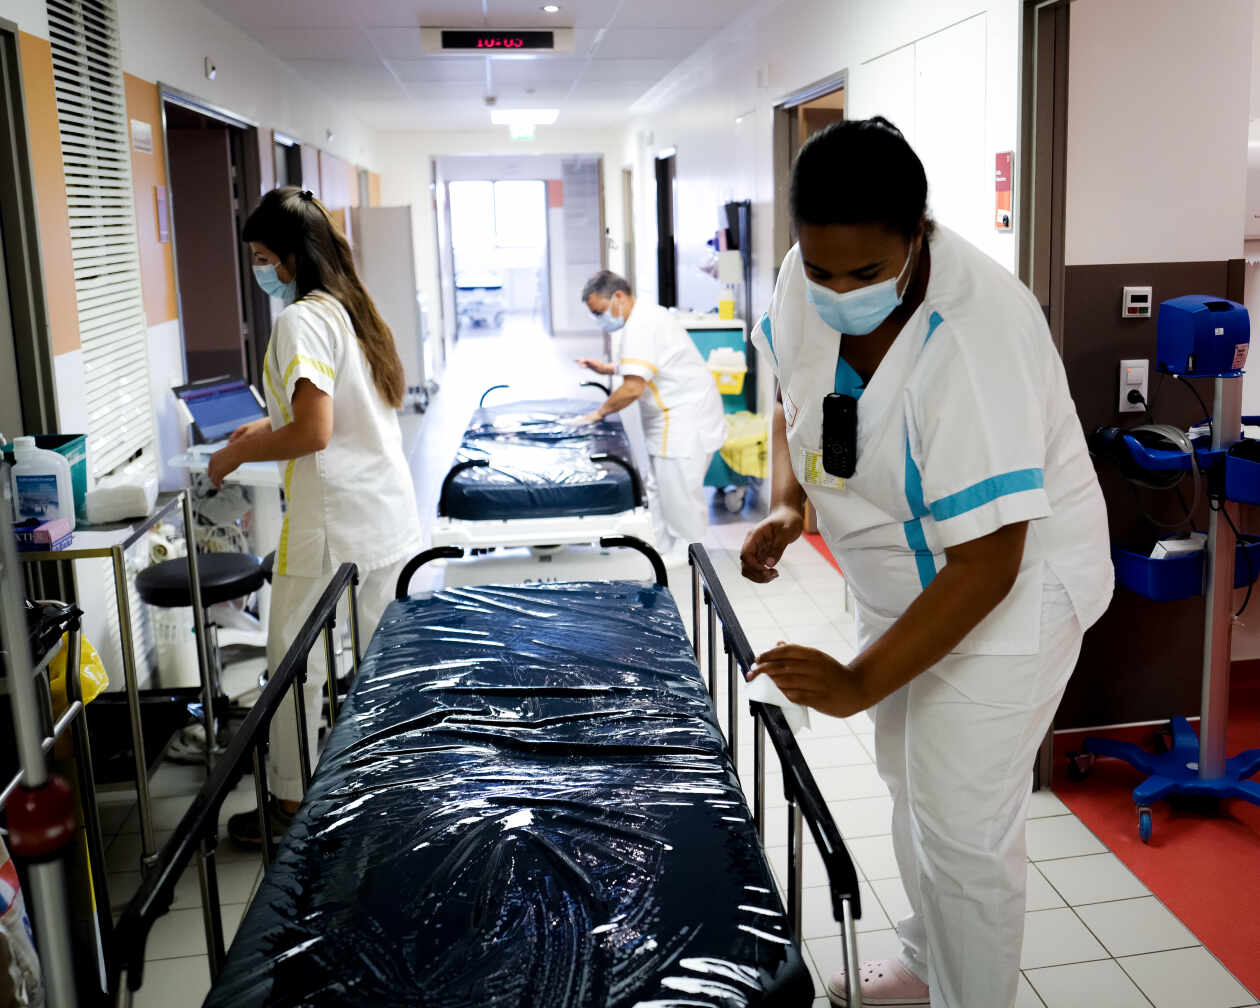 Une infirmière nettoie un brancard aux urgences de l’hôpital de la Source, à Orléans, le 15 juin 2022.